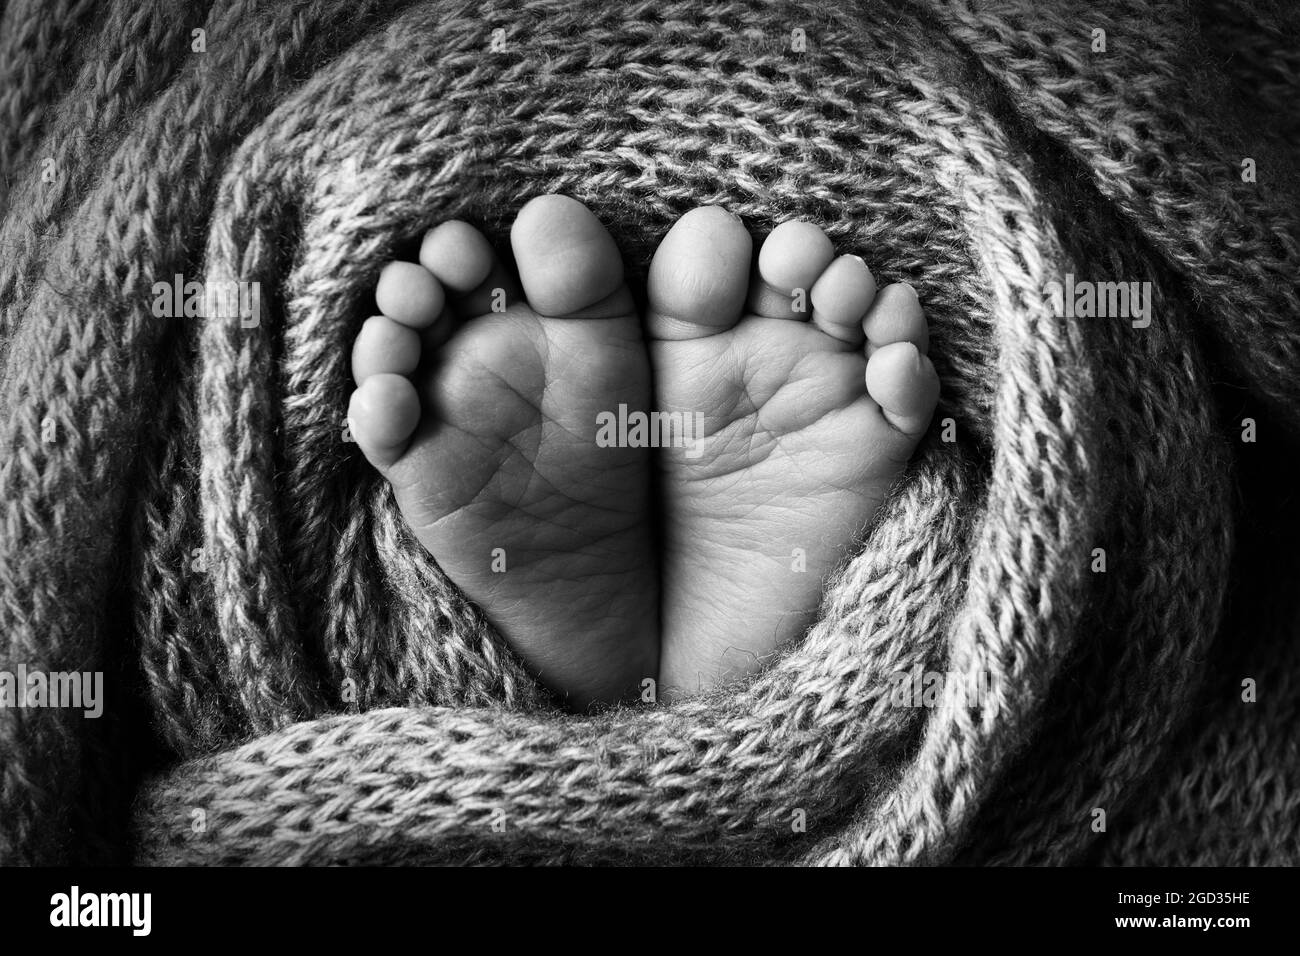 Los pies del bebé en una manta de lana azul claro y suave. Foto en blanco y negro. Foto de stock